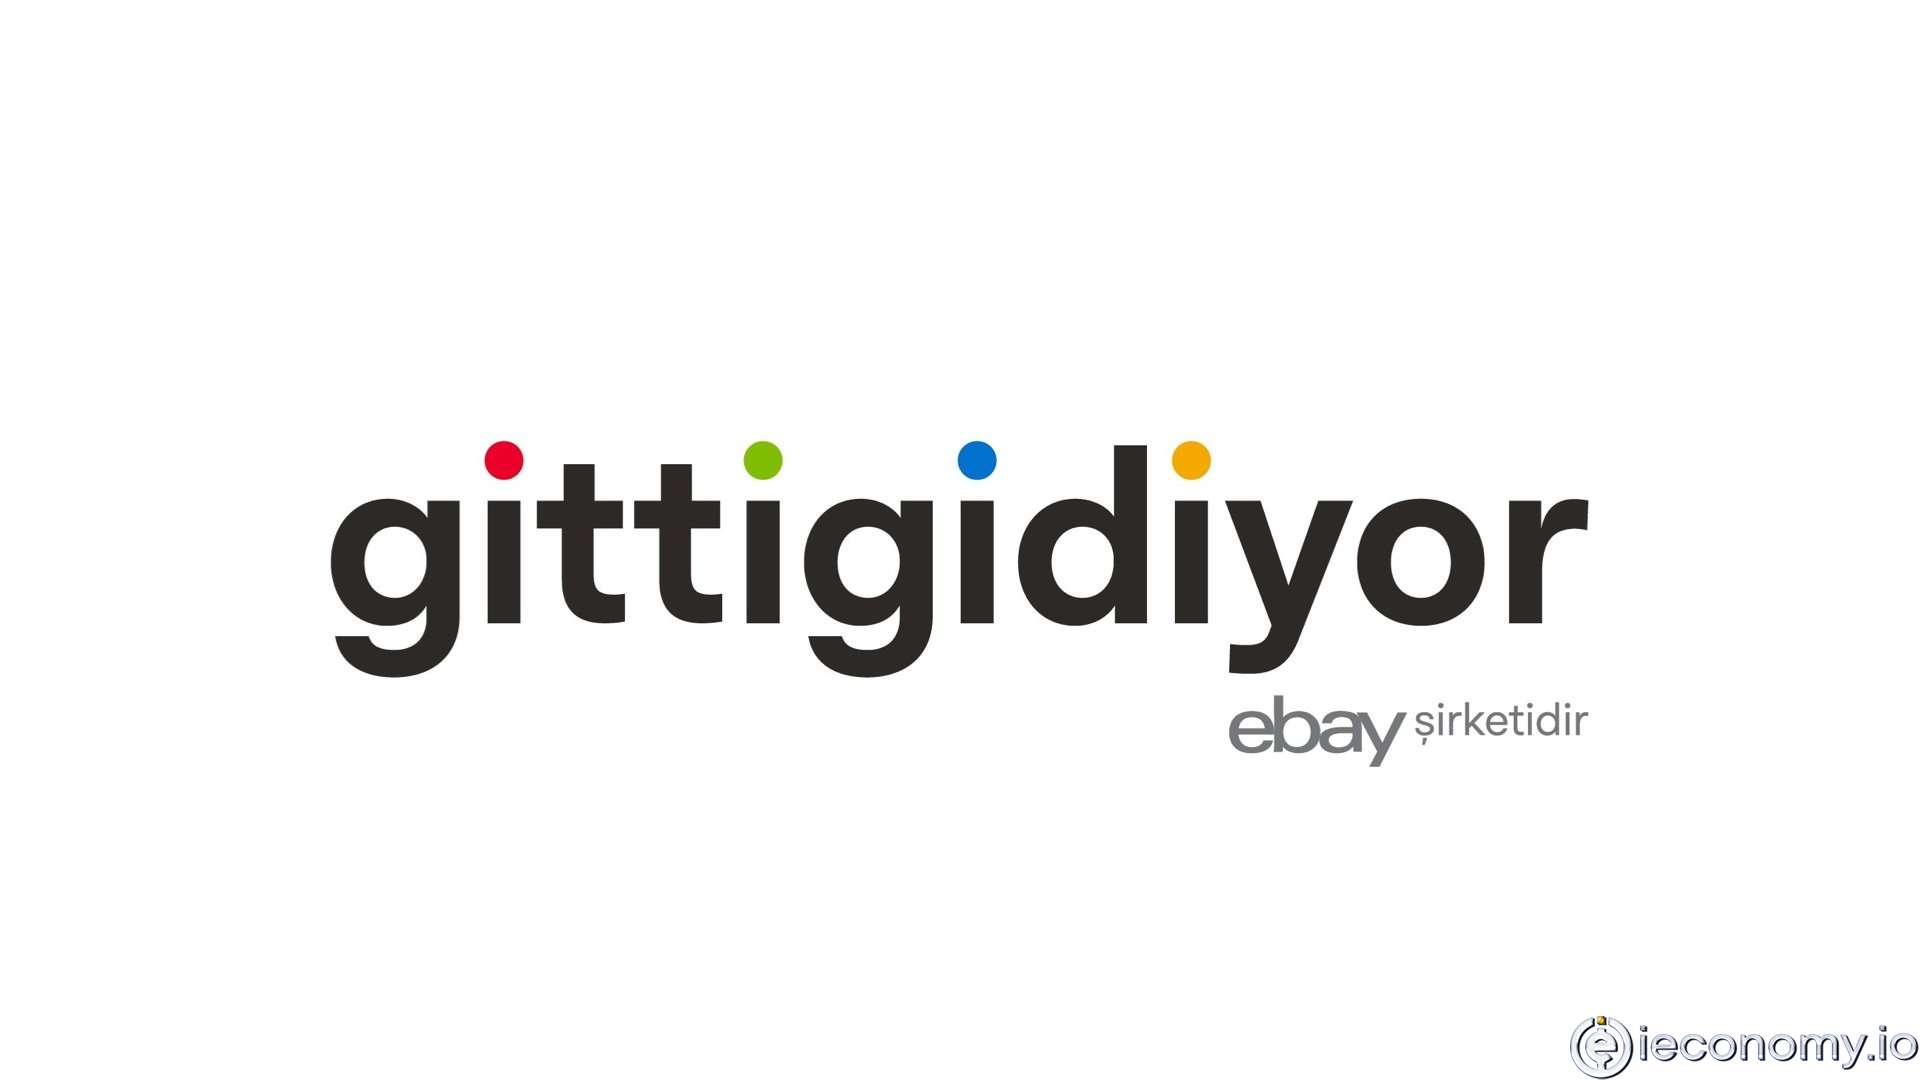 eBay Türkiye’den Çekilme Kararı Aldı